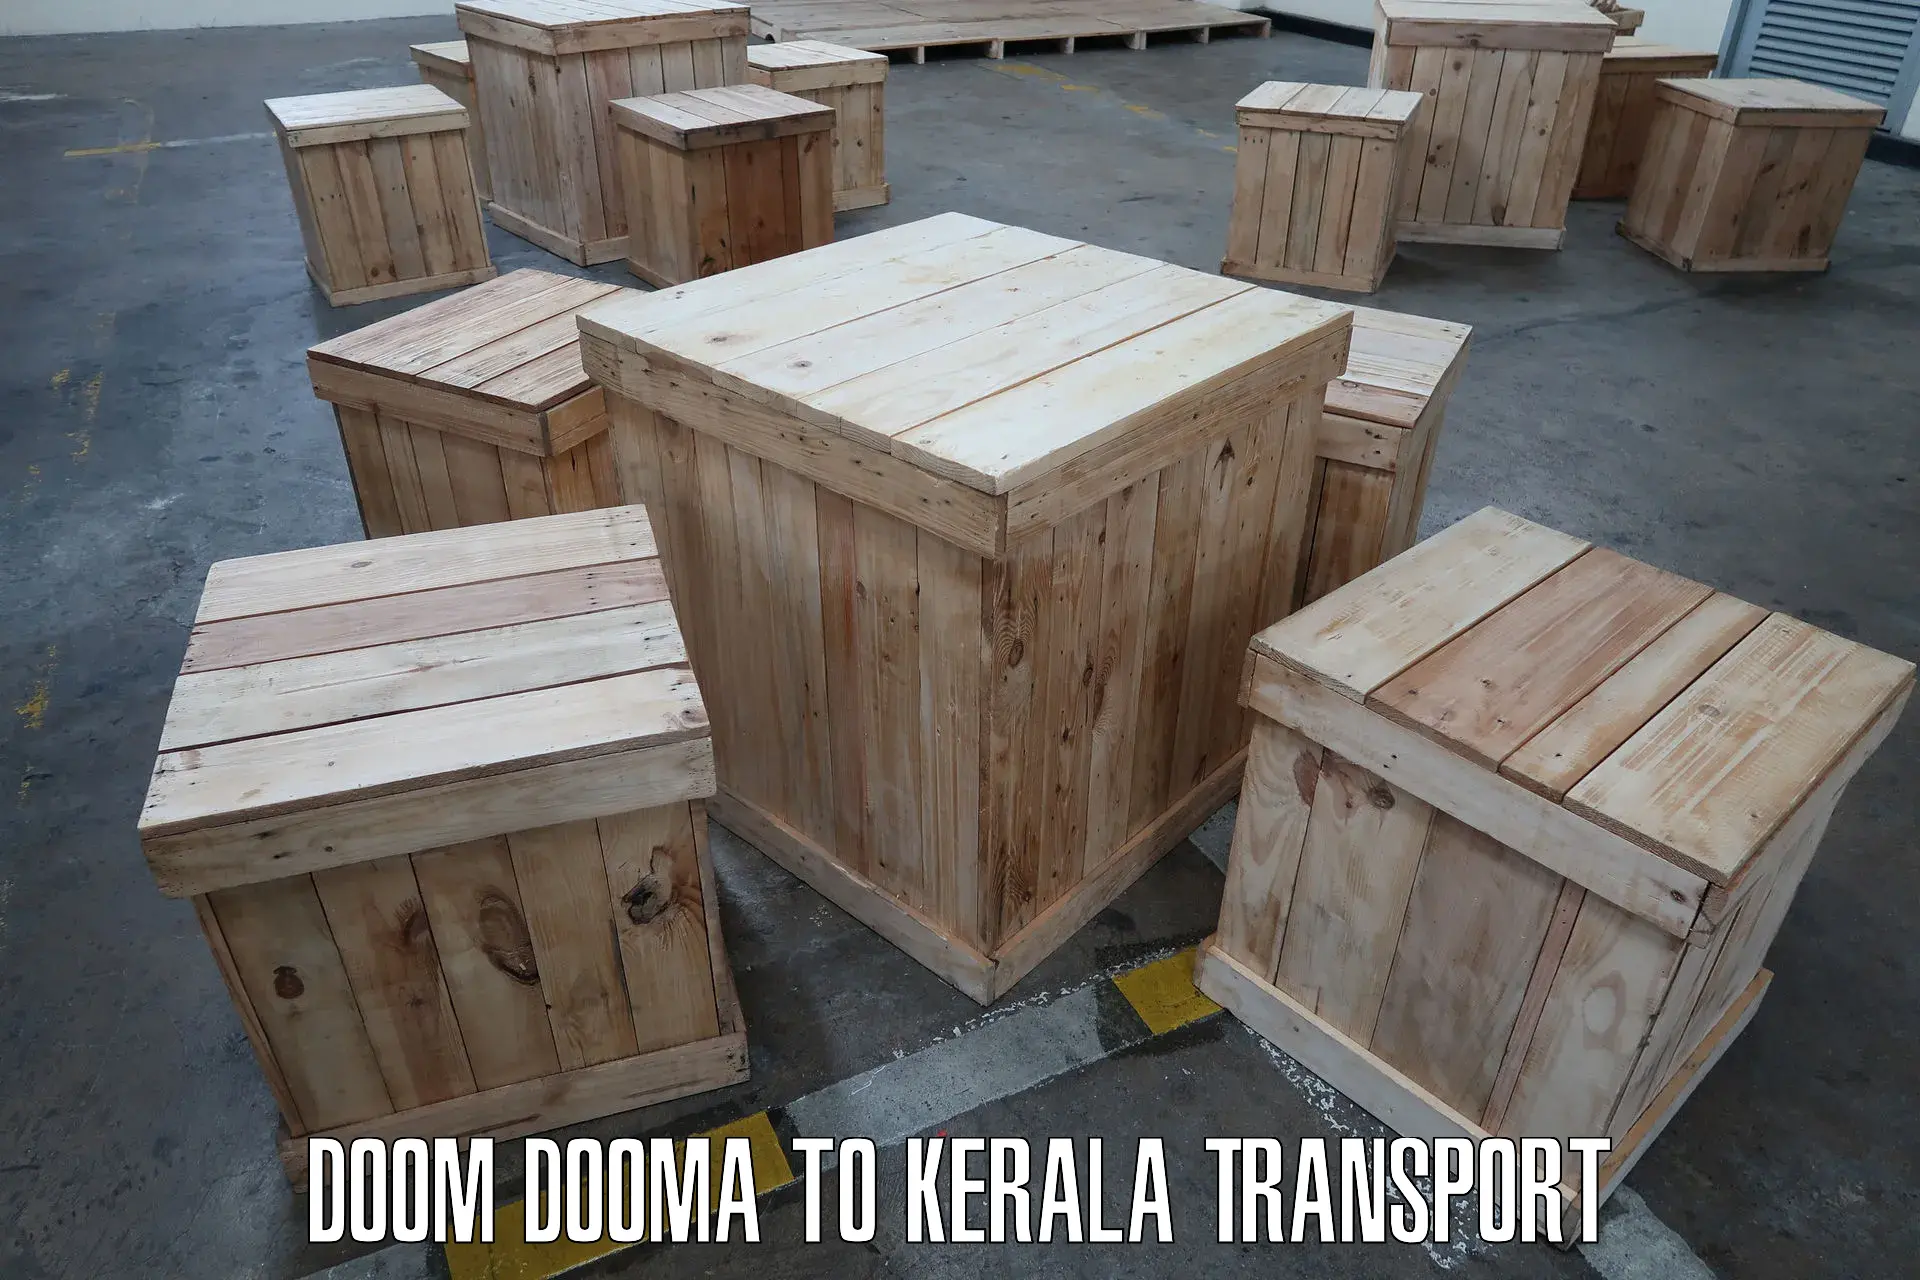 Nearby transport service Doom Dooma to Taliparamba